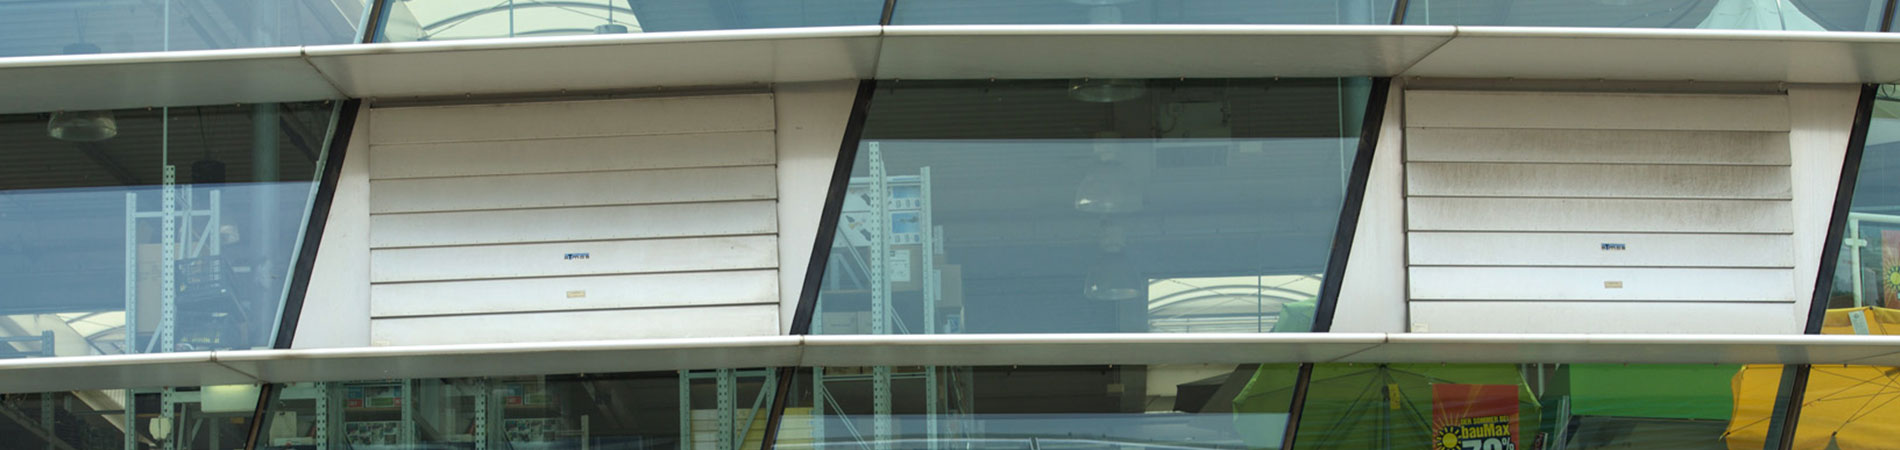 Lamellenlüfter vertikal in Glasfassade integriert